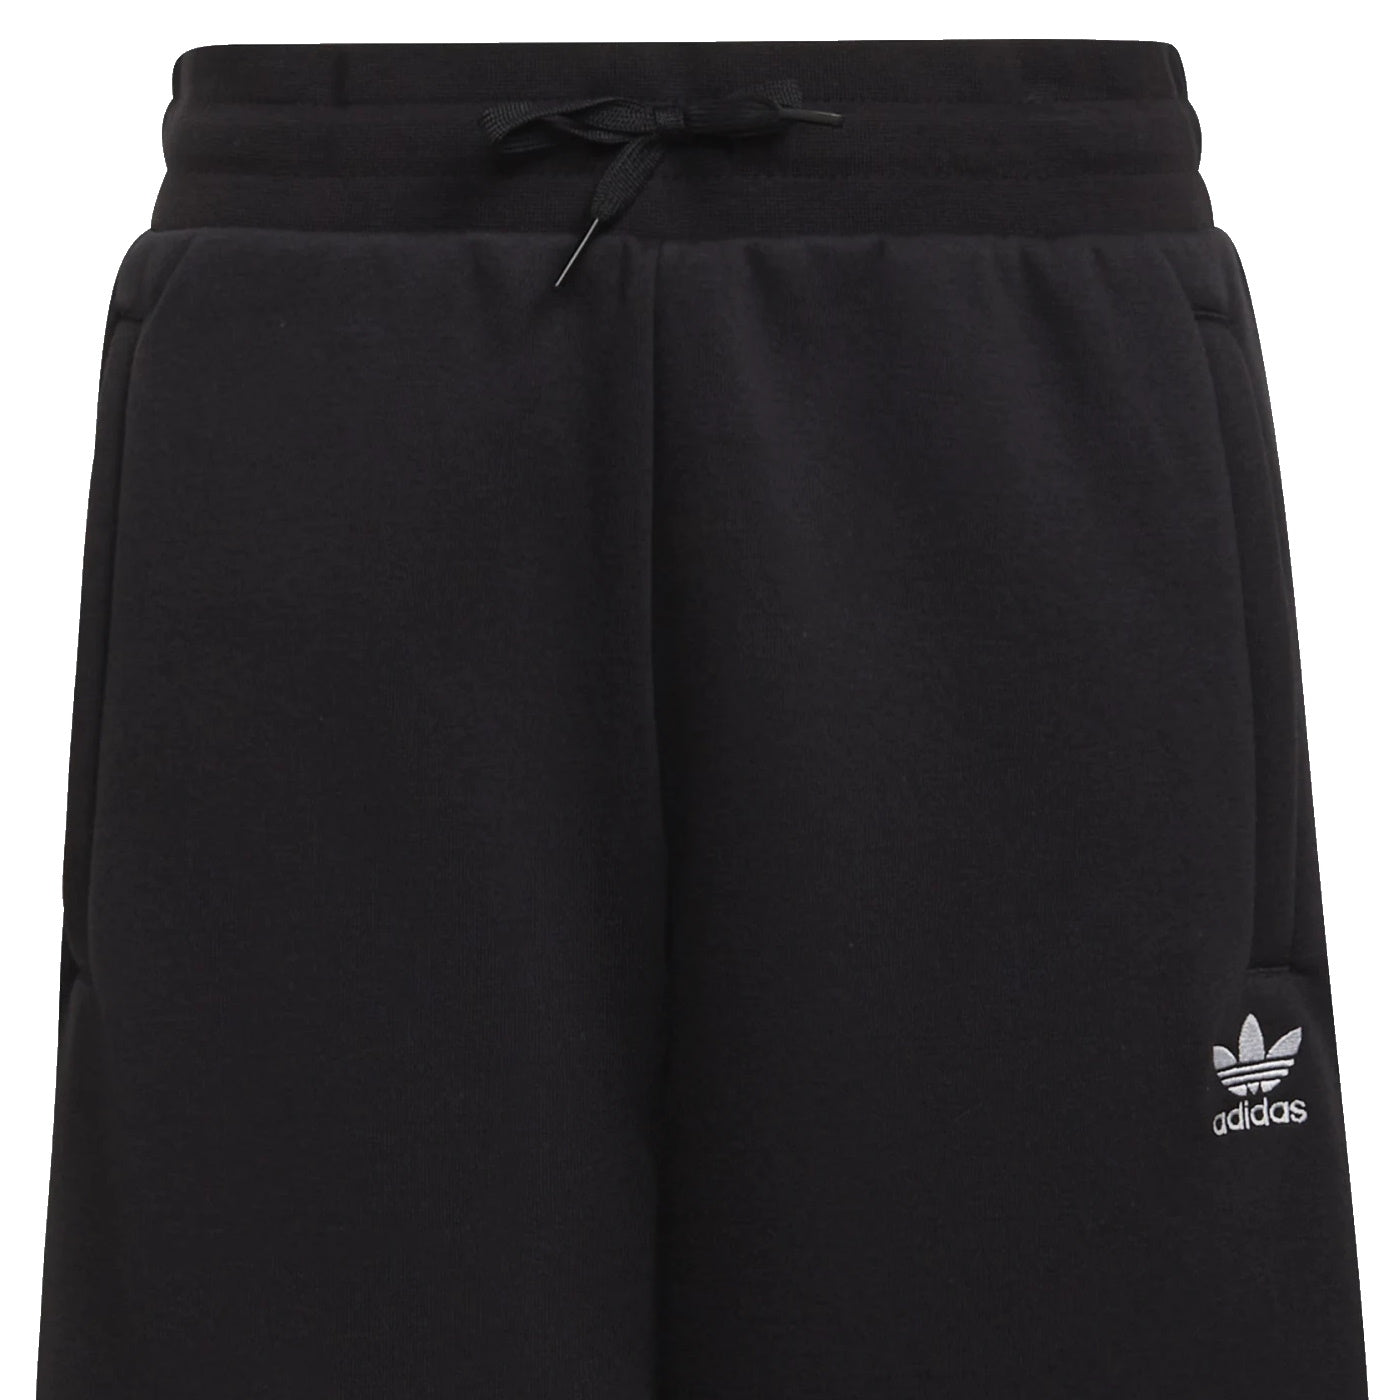 Adidas shorts unisex nero